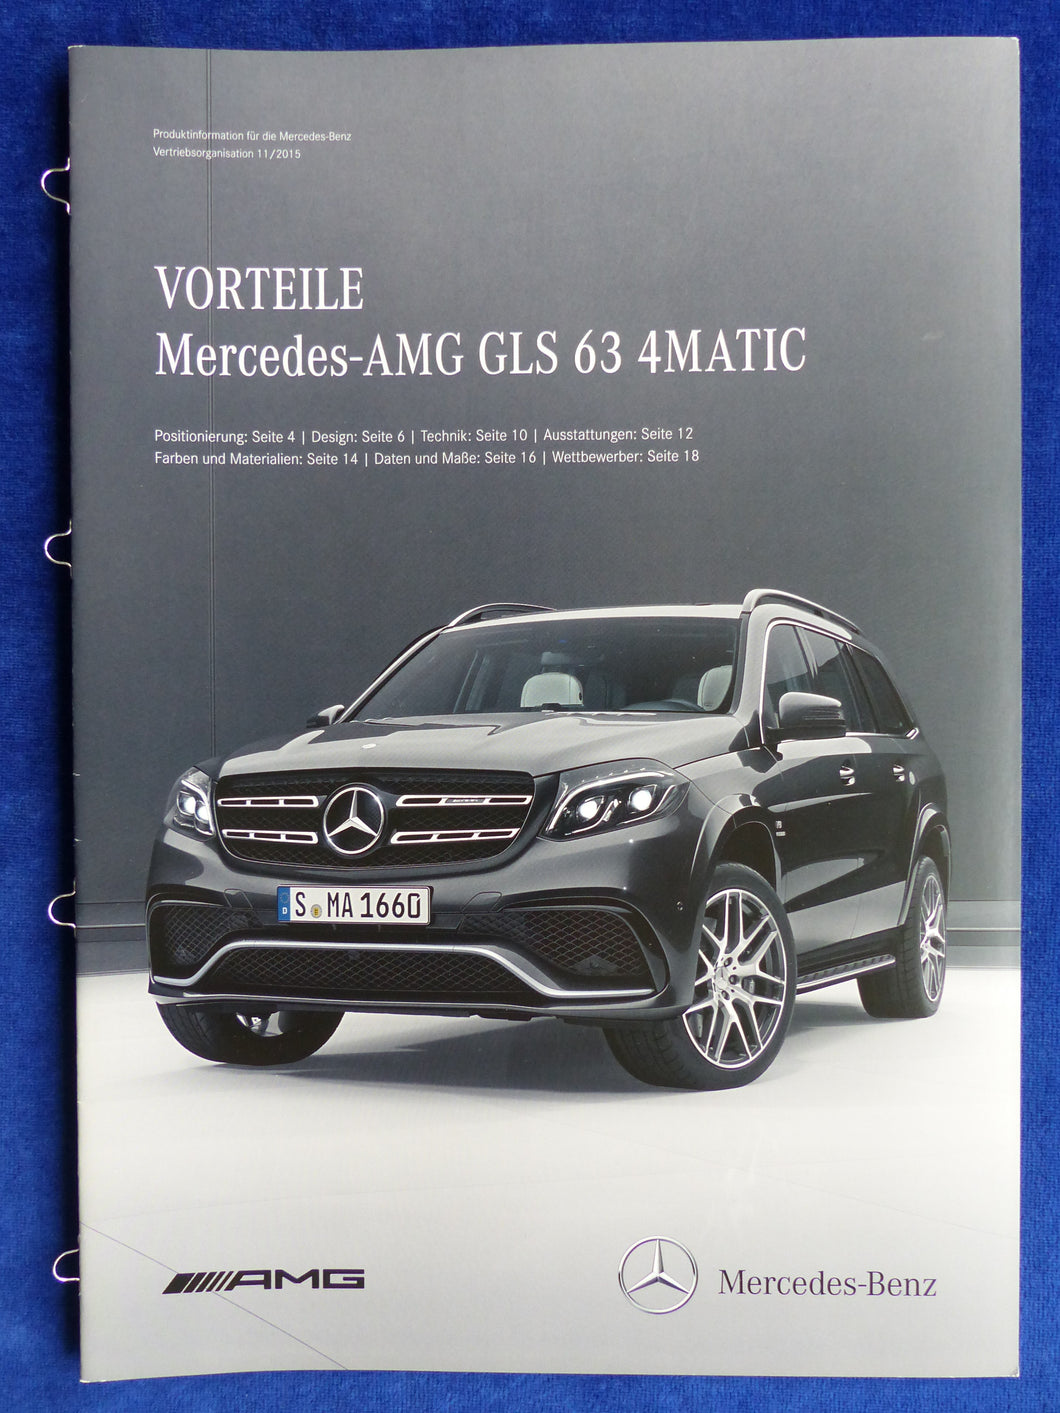 Mercedes-Benz Vorteile AMG GLS 63 Typ X166 MJ 2016 - Prospekt Brochure 11.2015